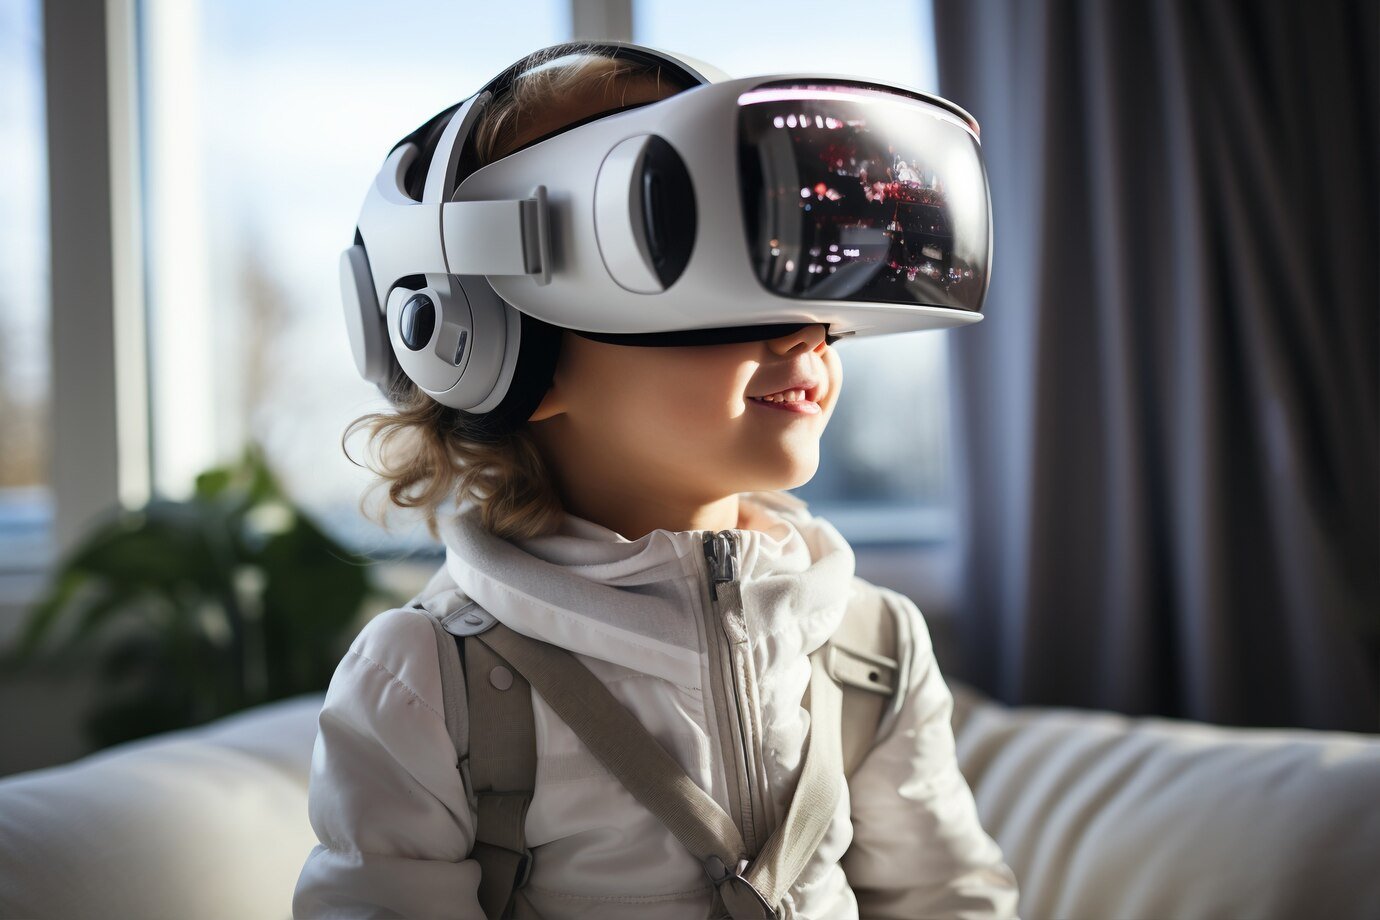 Foto gerada por IA: garotinha usando óculos de realidade virtual futurista